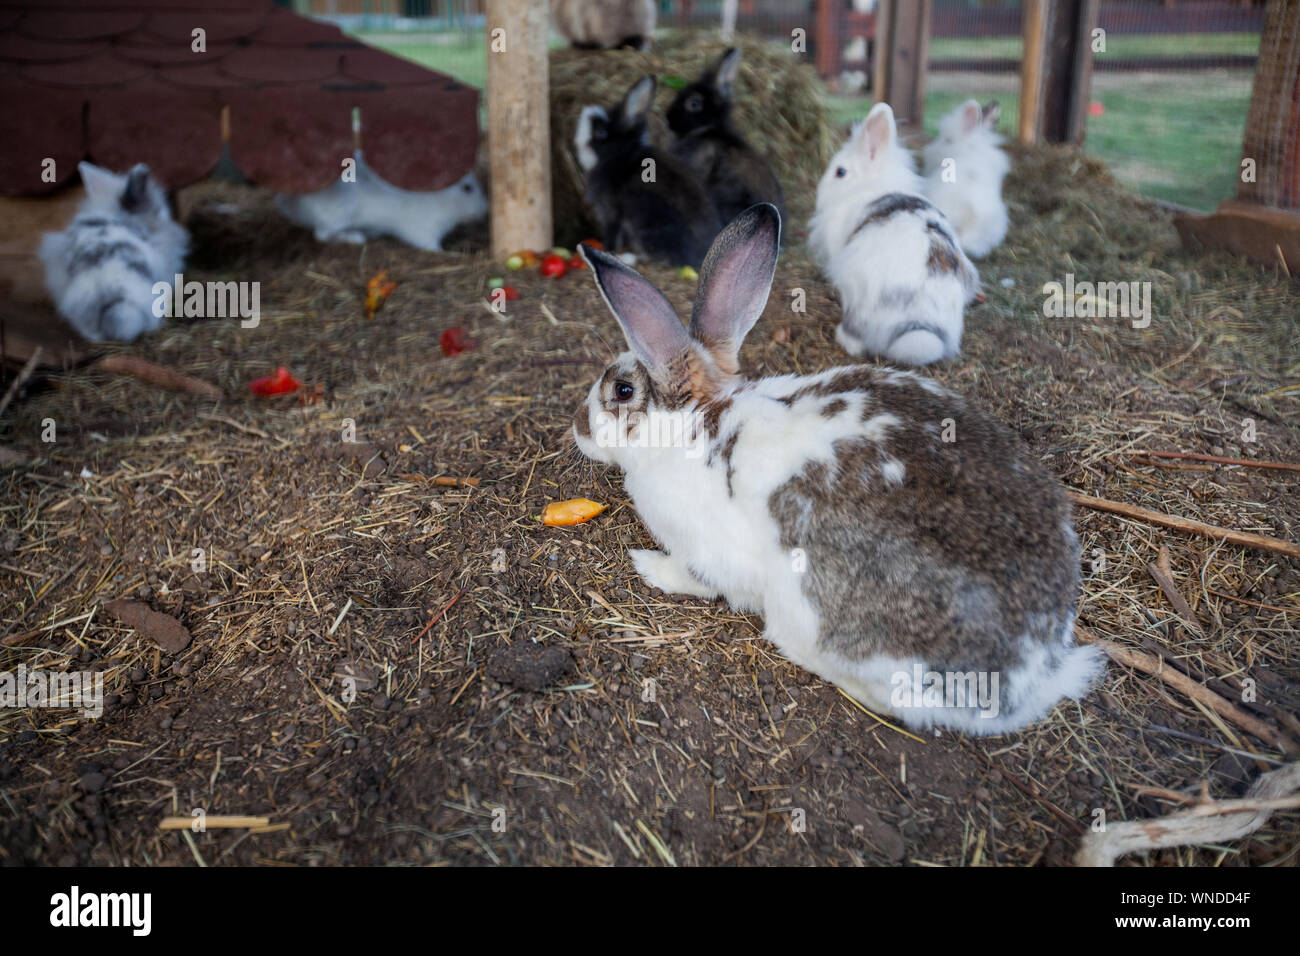 Funny cute rabbits at rabbits box on the rural ranch. Stock Photo